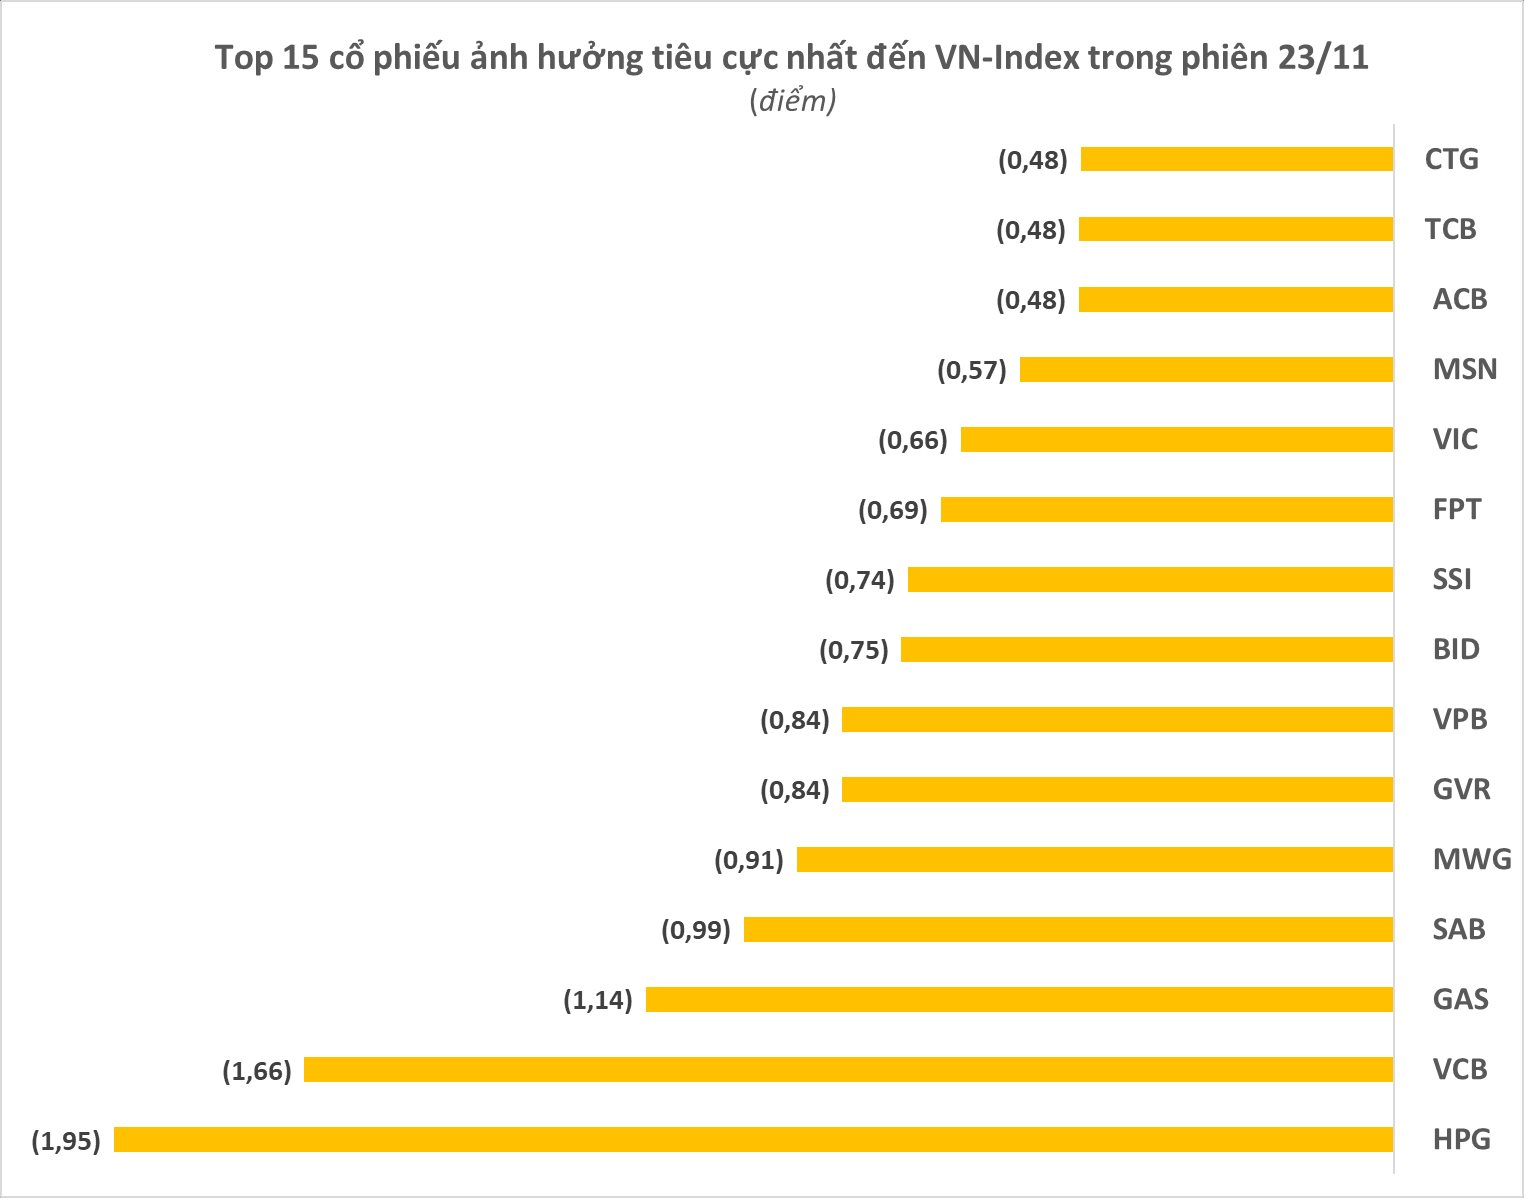 Chân dung những “tác nhân” khiến VN-Index đánh rơi 25 điểm, giảm mạnh nhất châu Á trong phiên 23/11 - Ảnh 3.